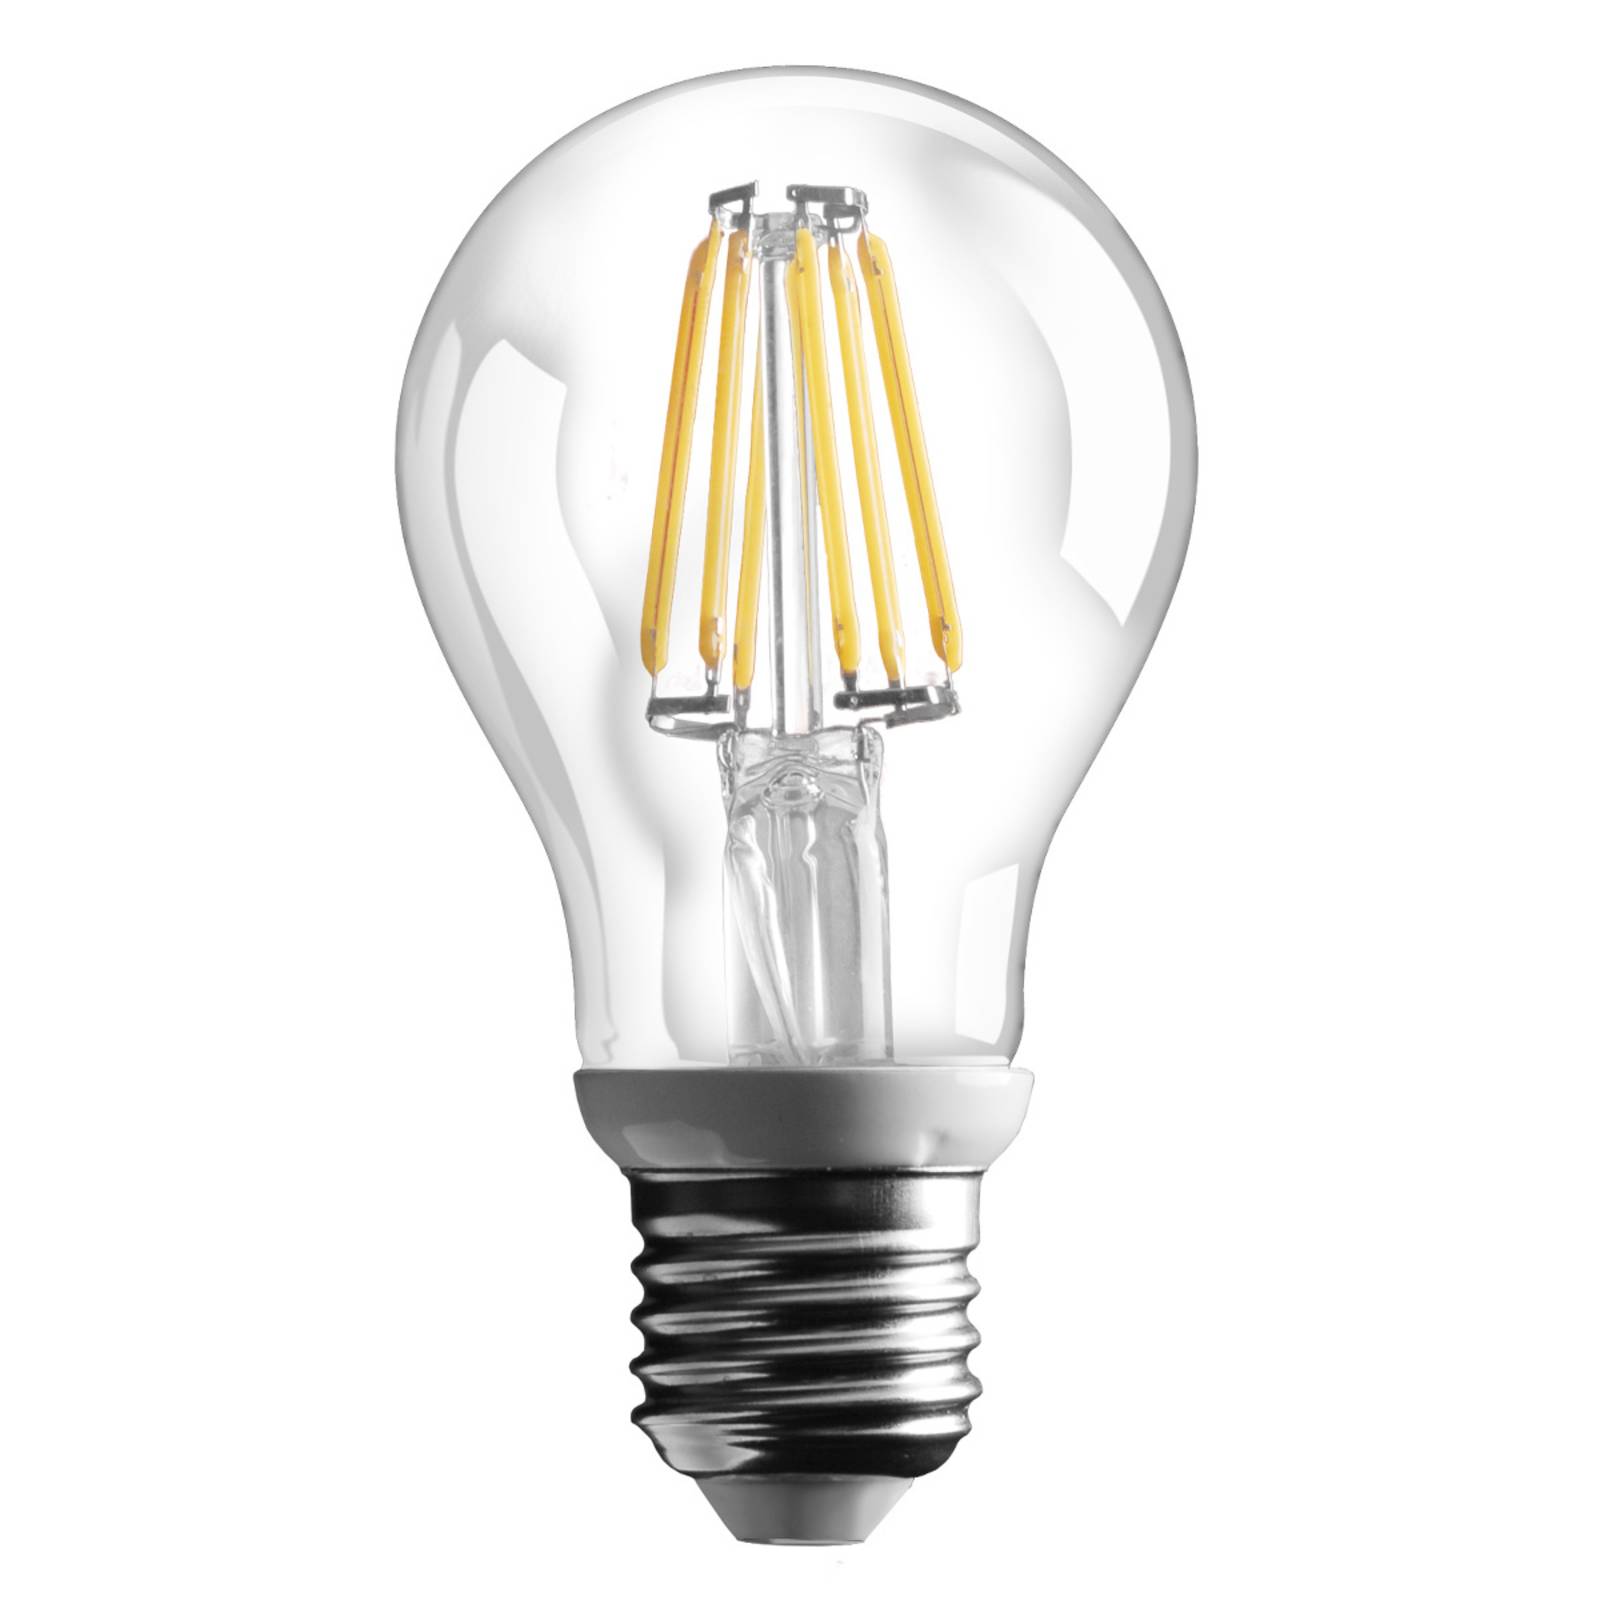 Image of Ampoule LED à filament E27, 6W, 800lm, blanc chaud 8031874096471